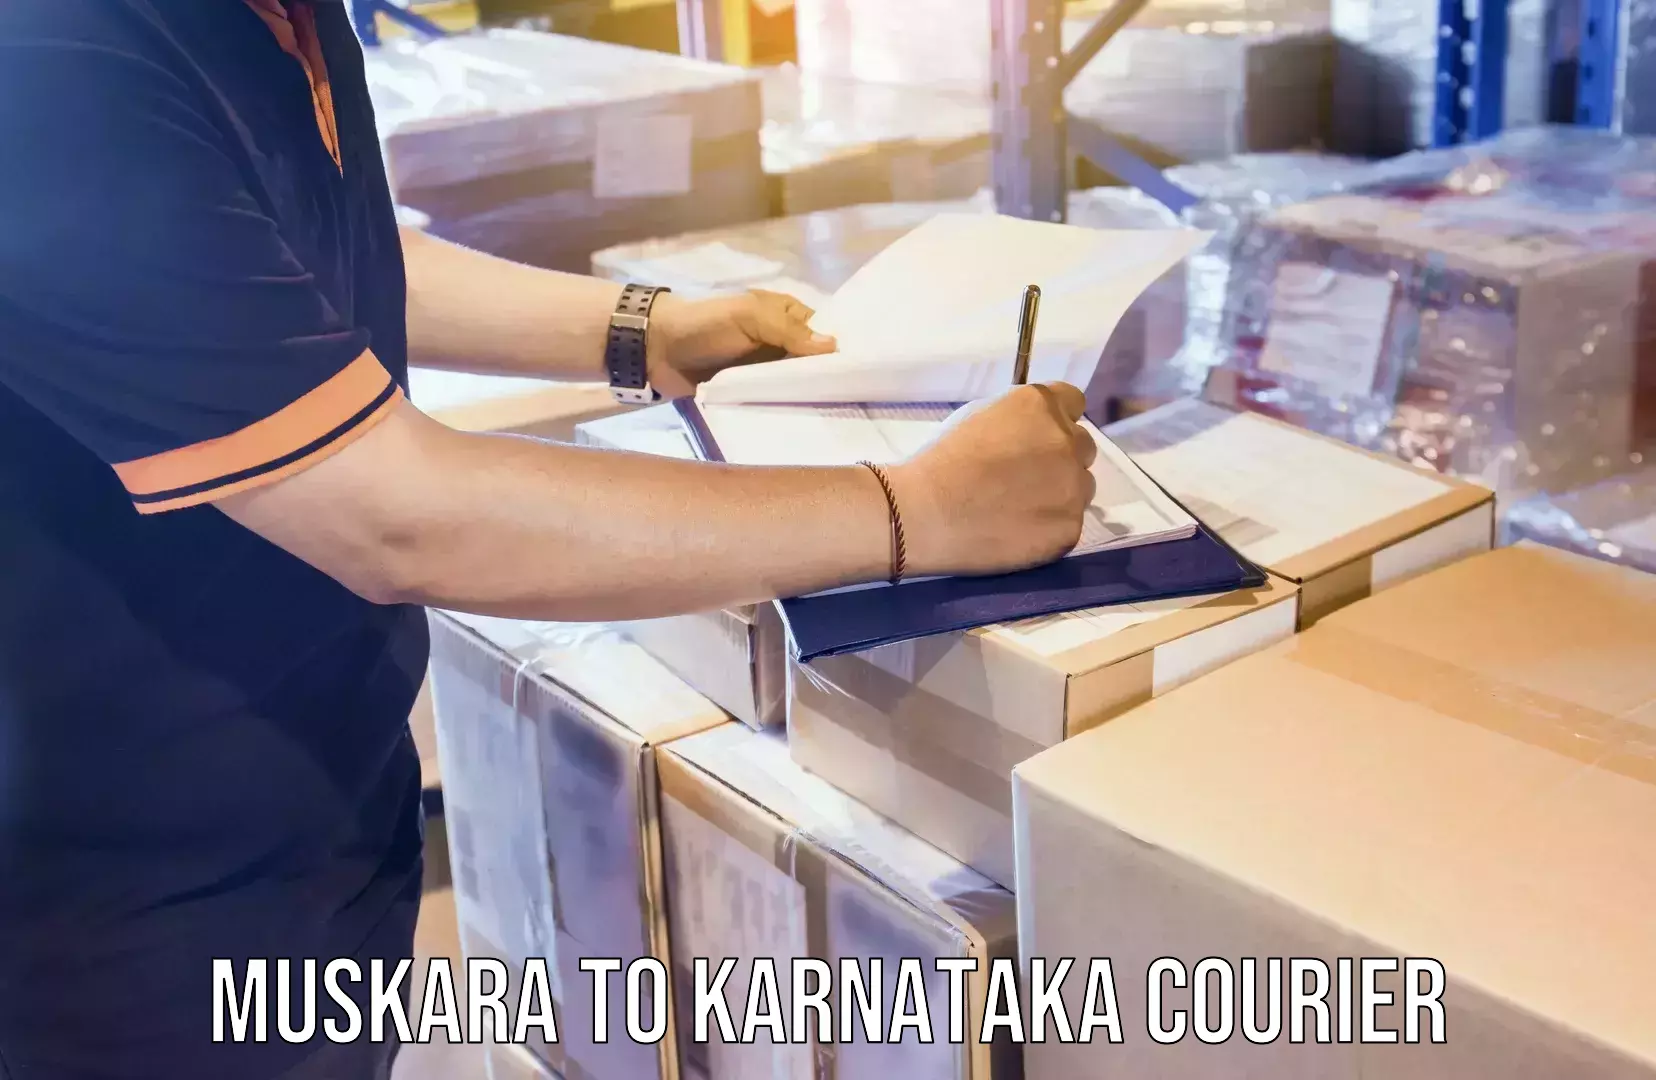 Customized moving experience Muskara to Karnataka